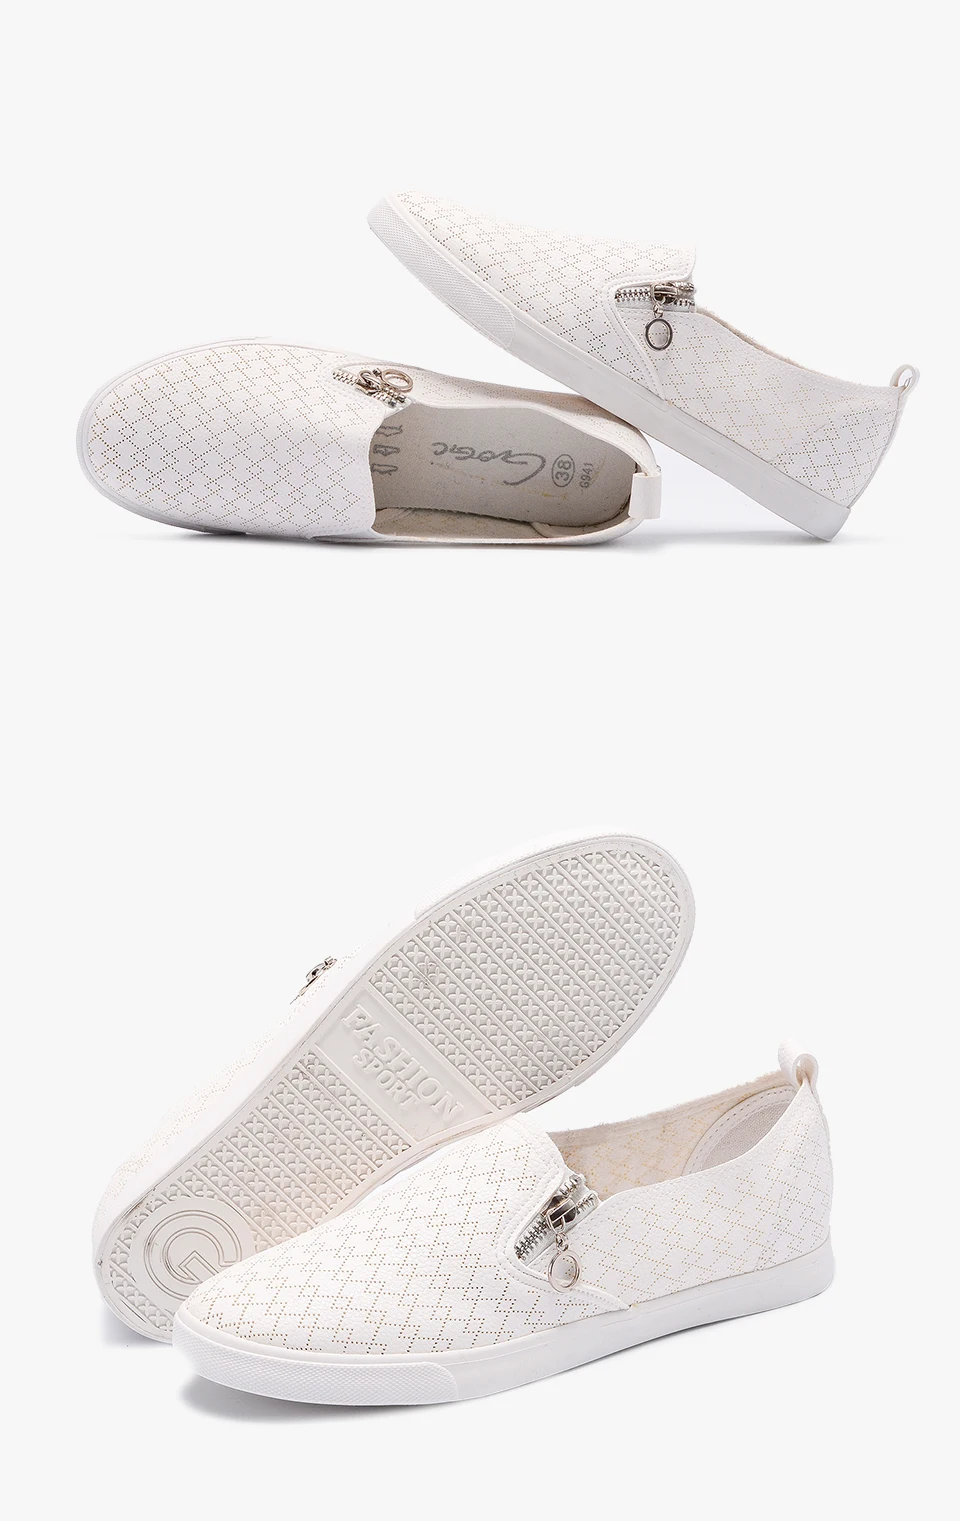 GOGC/ новые слипоны женская обувь с отверстием дышащая обувь на плоской подошве Для женщин модные женские туфли Спортивная обувь на лето и весну обувь